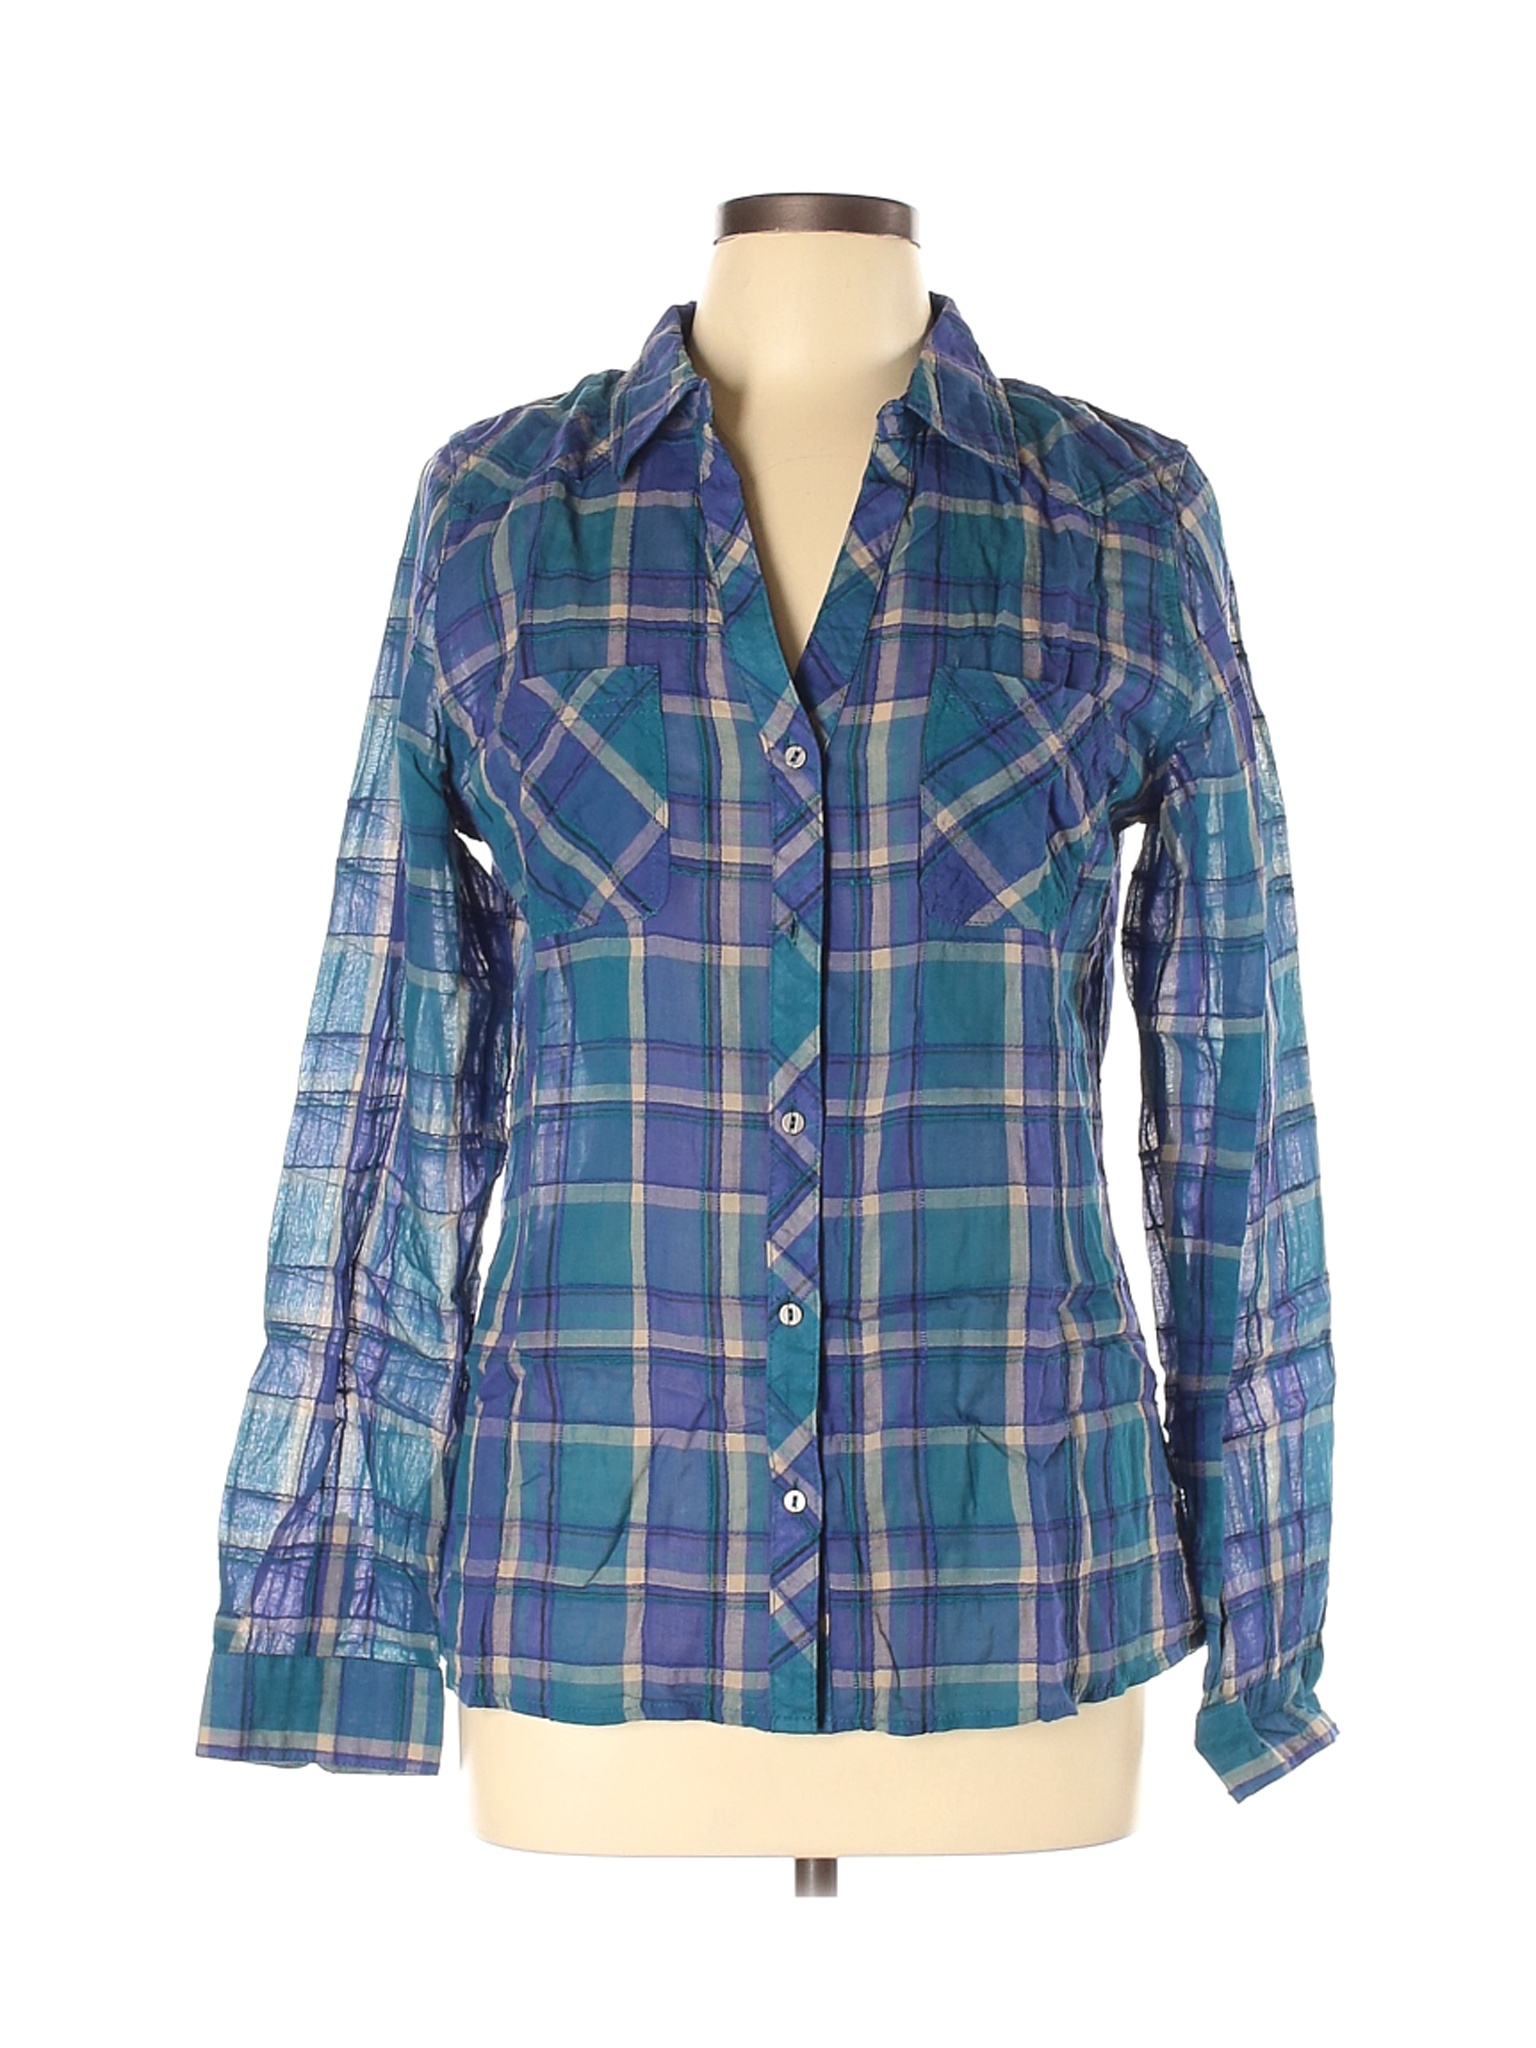 Maurices Women Blue Long Sleeve Button-Down Shirt L | eBay